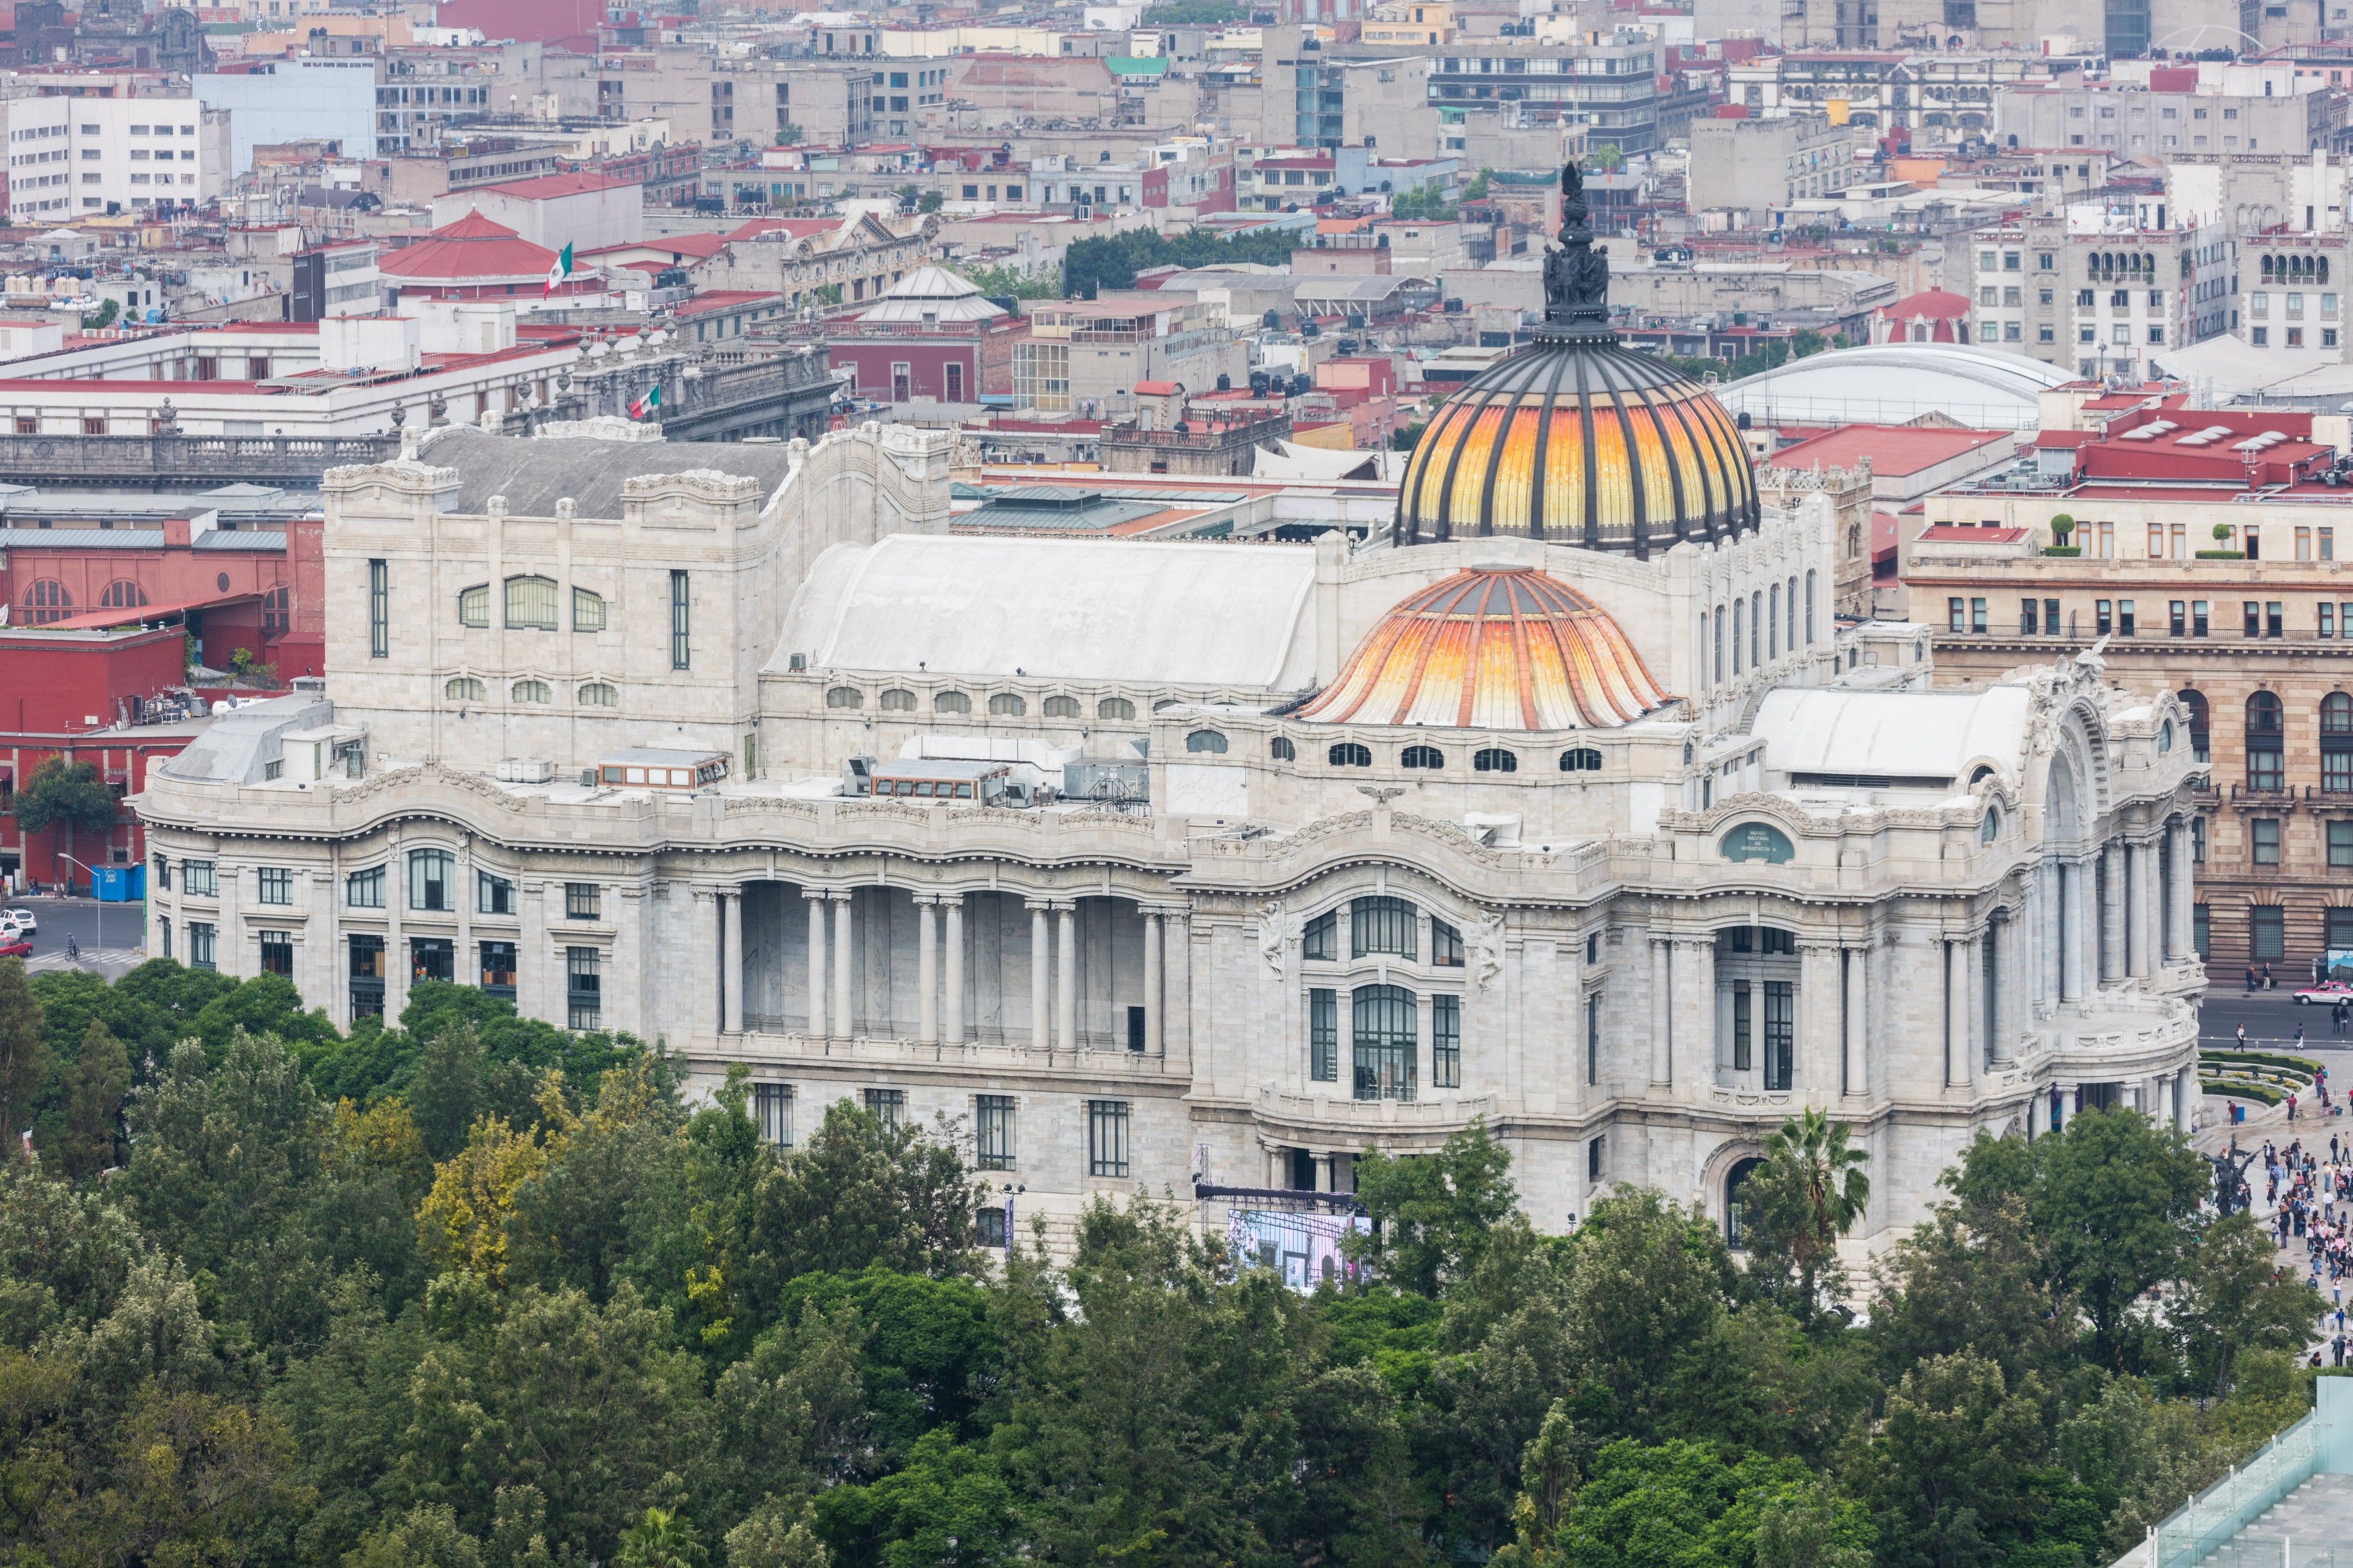 Palacio de Bellas Artes, Ciudad de México, México, 2015-07-18, DD 10